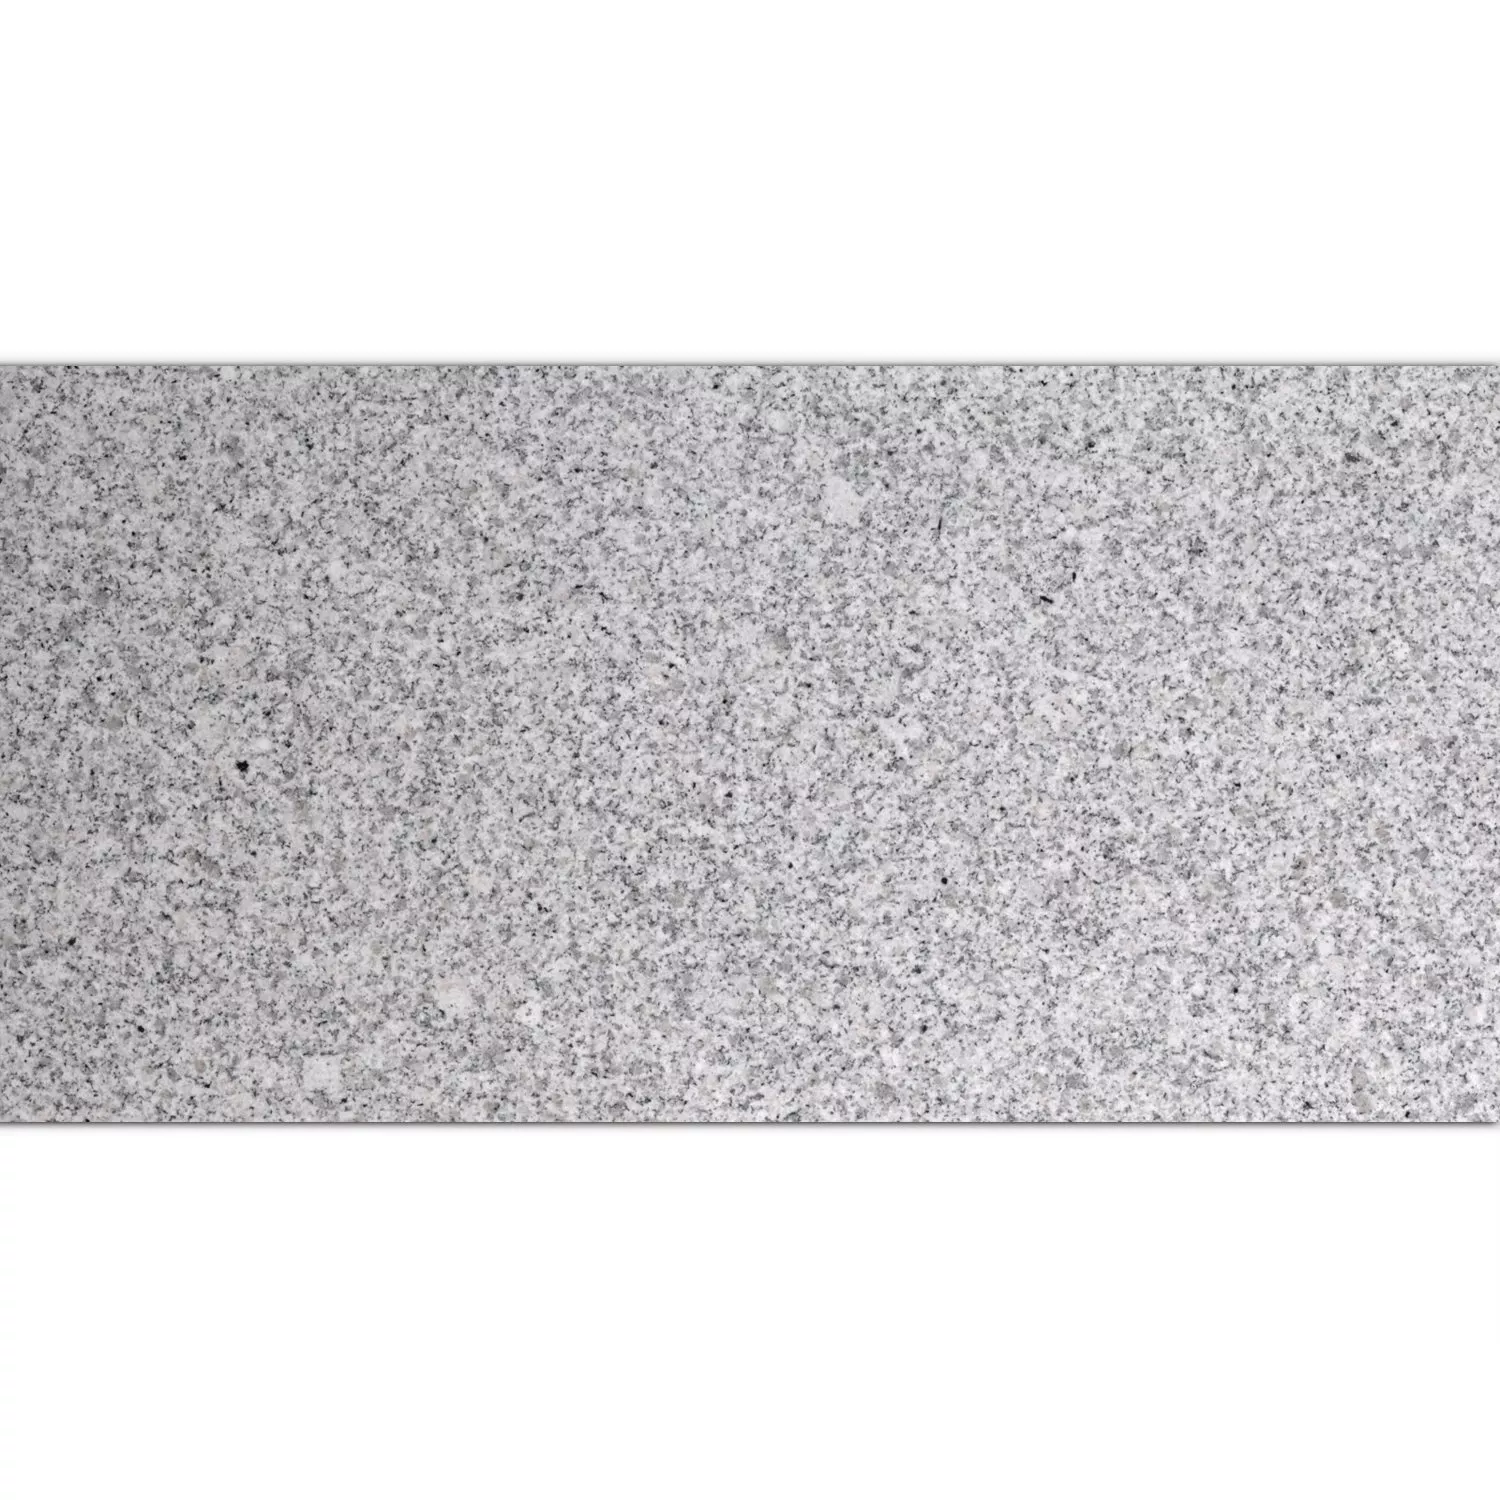 Pietra Naturale Piastrella Granito China Grey Lucidato 30,5x61cm